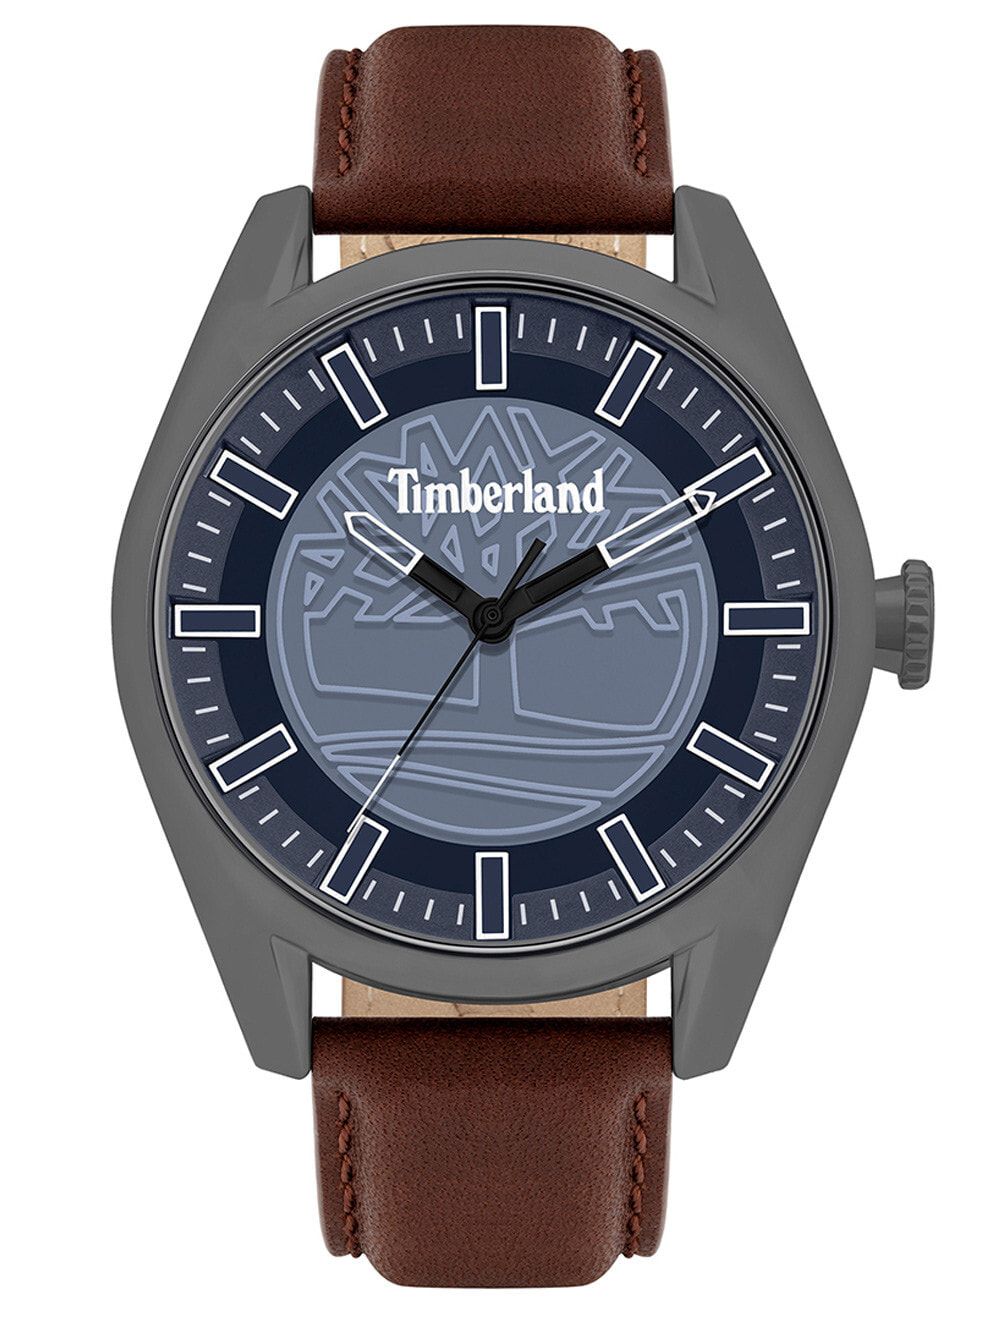 Мужские наручные часы с коричневым кожаным ремешком  Timberland TBL16005JYU.03 Ashfield Mens 46mm 5ATM